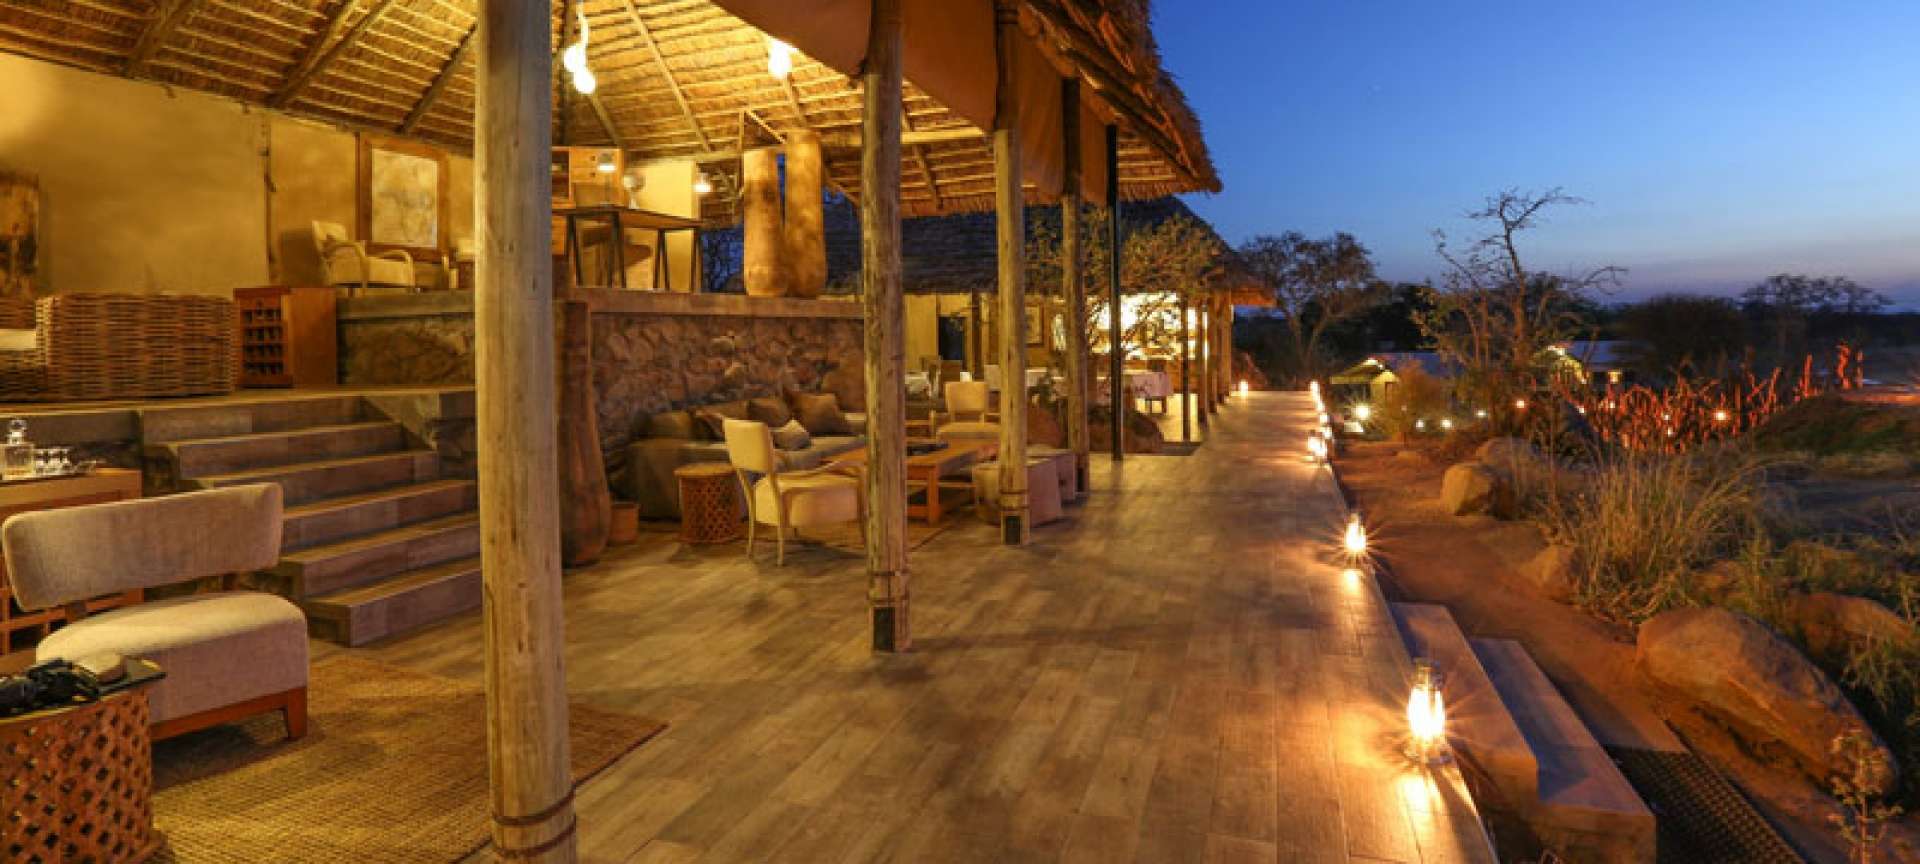 Luxury safaris in Tanzania